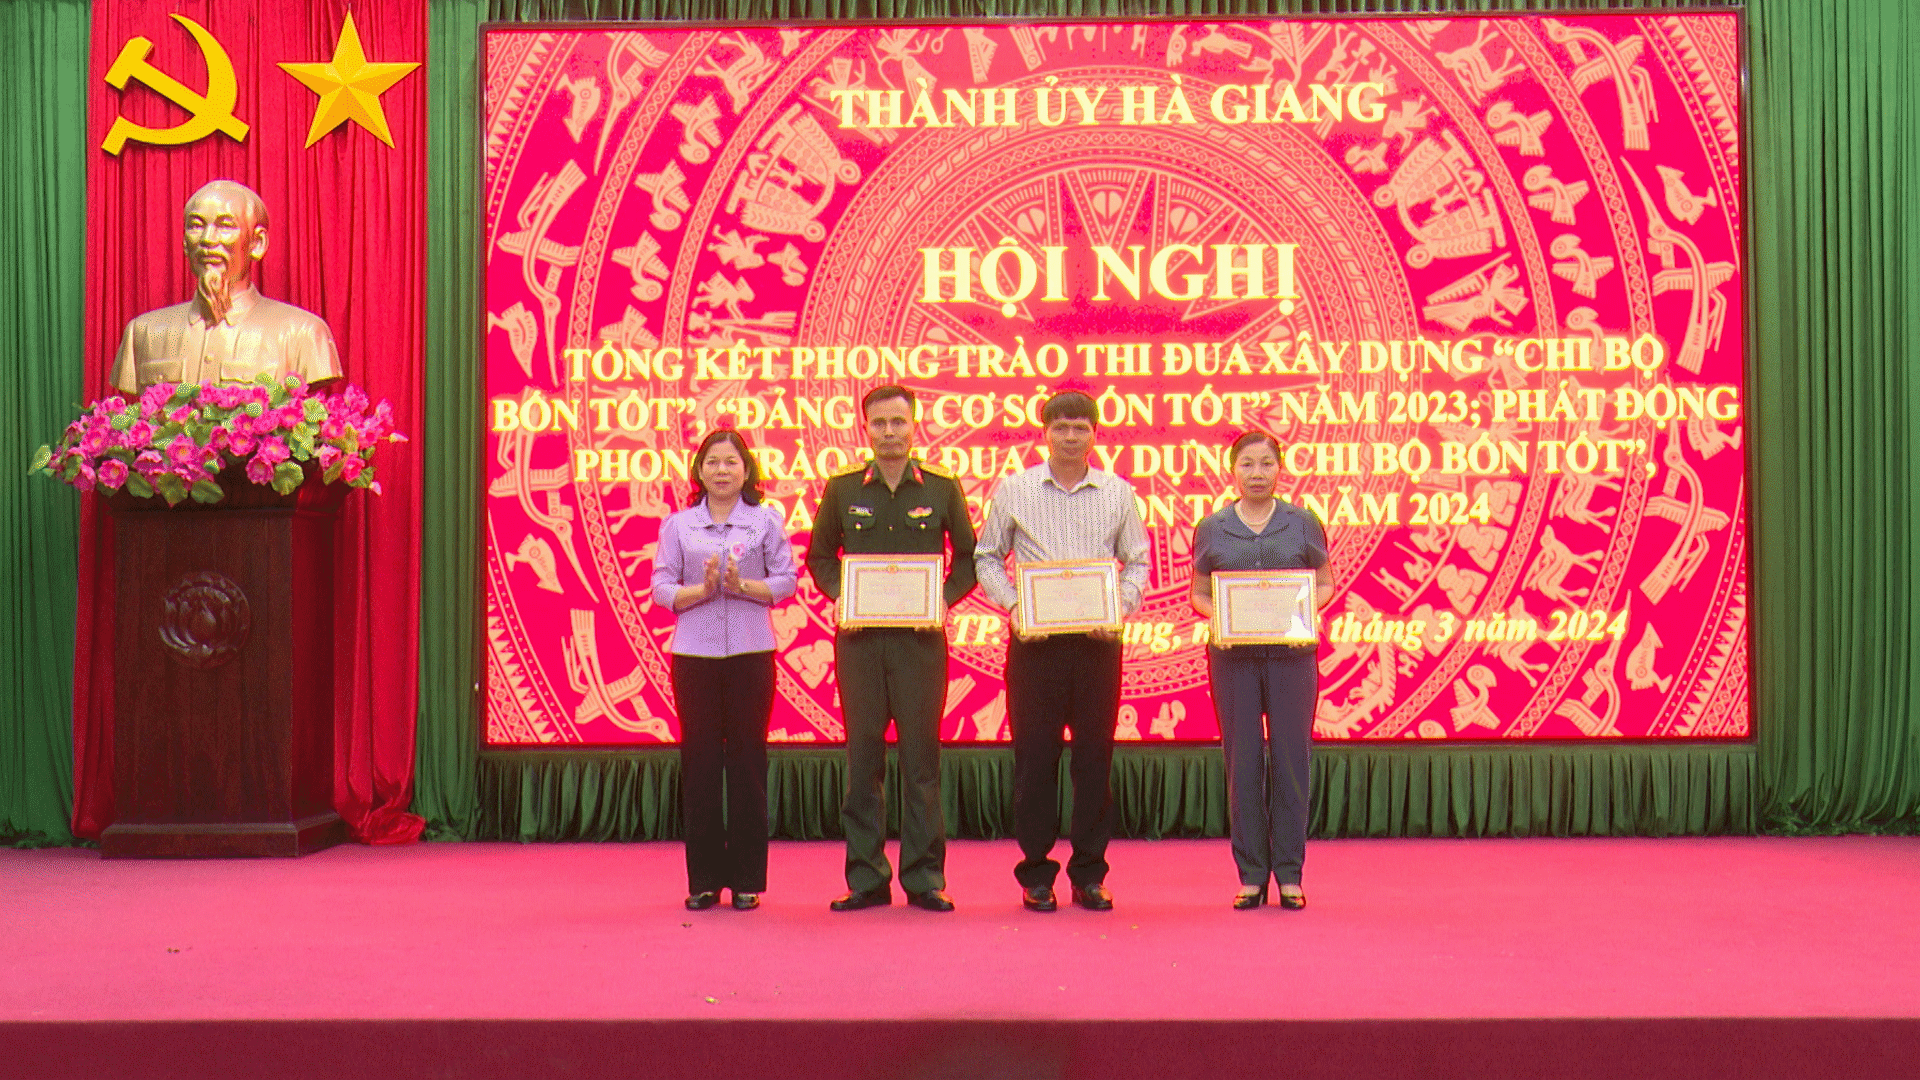 Thành ủy Hà Giang tổng kết phong trào thi đua xây dựng “ Chi bộ bốn tốt, Đảng bộ cơ sở bốn tốt” năm 2023, phát động phong trào thi đua năm 2024